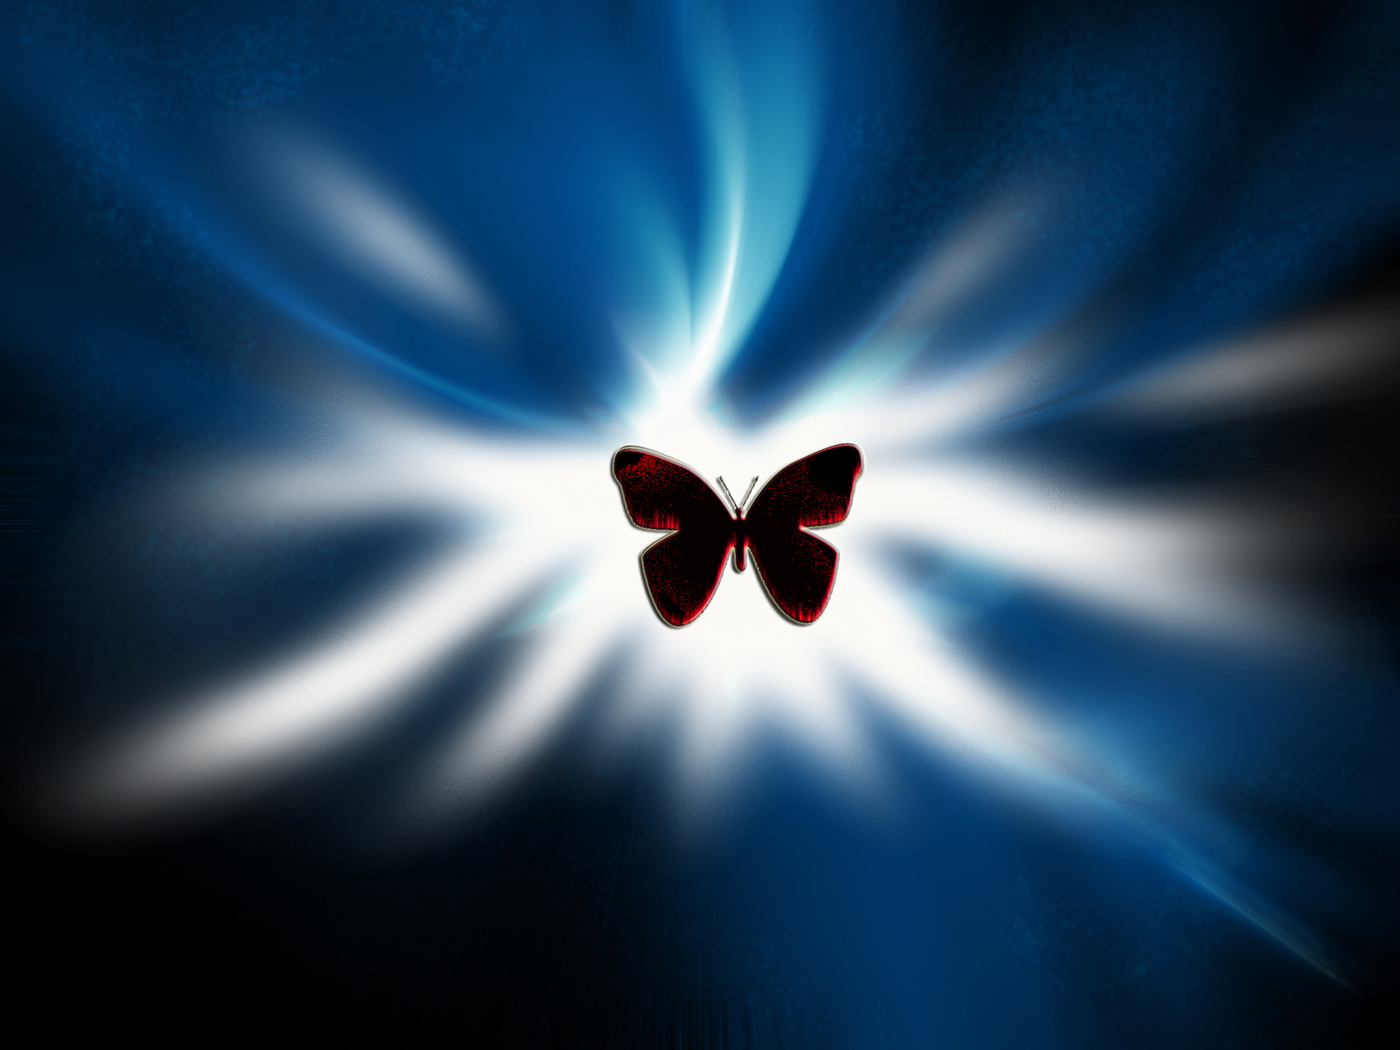 Kupu-kupu Silhouette - Macro Photography - HD Wallpaper 